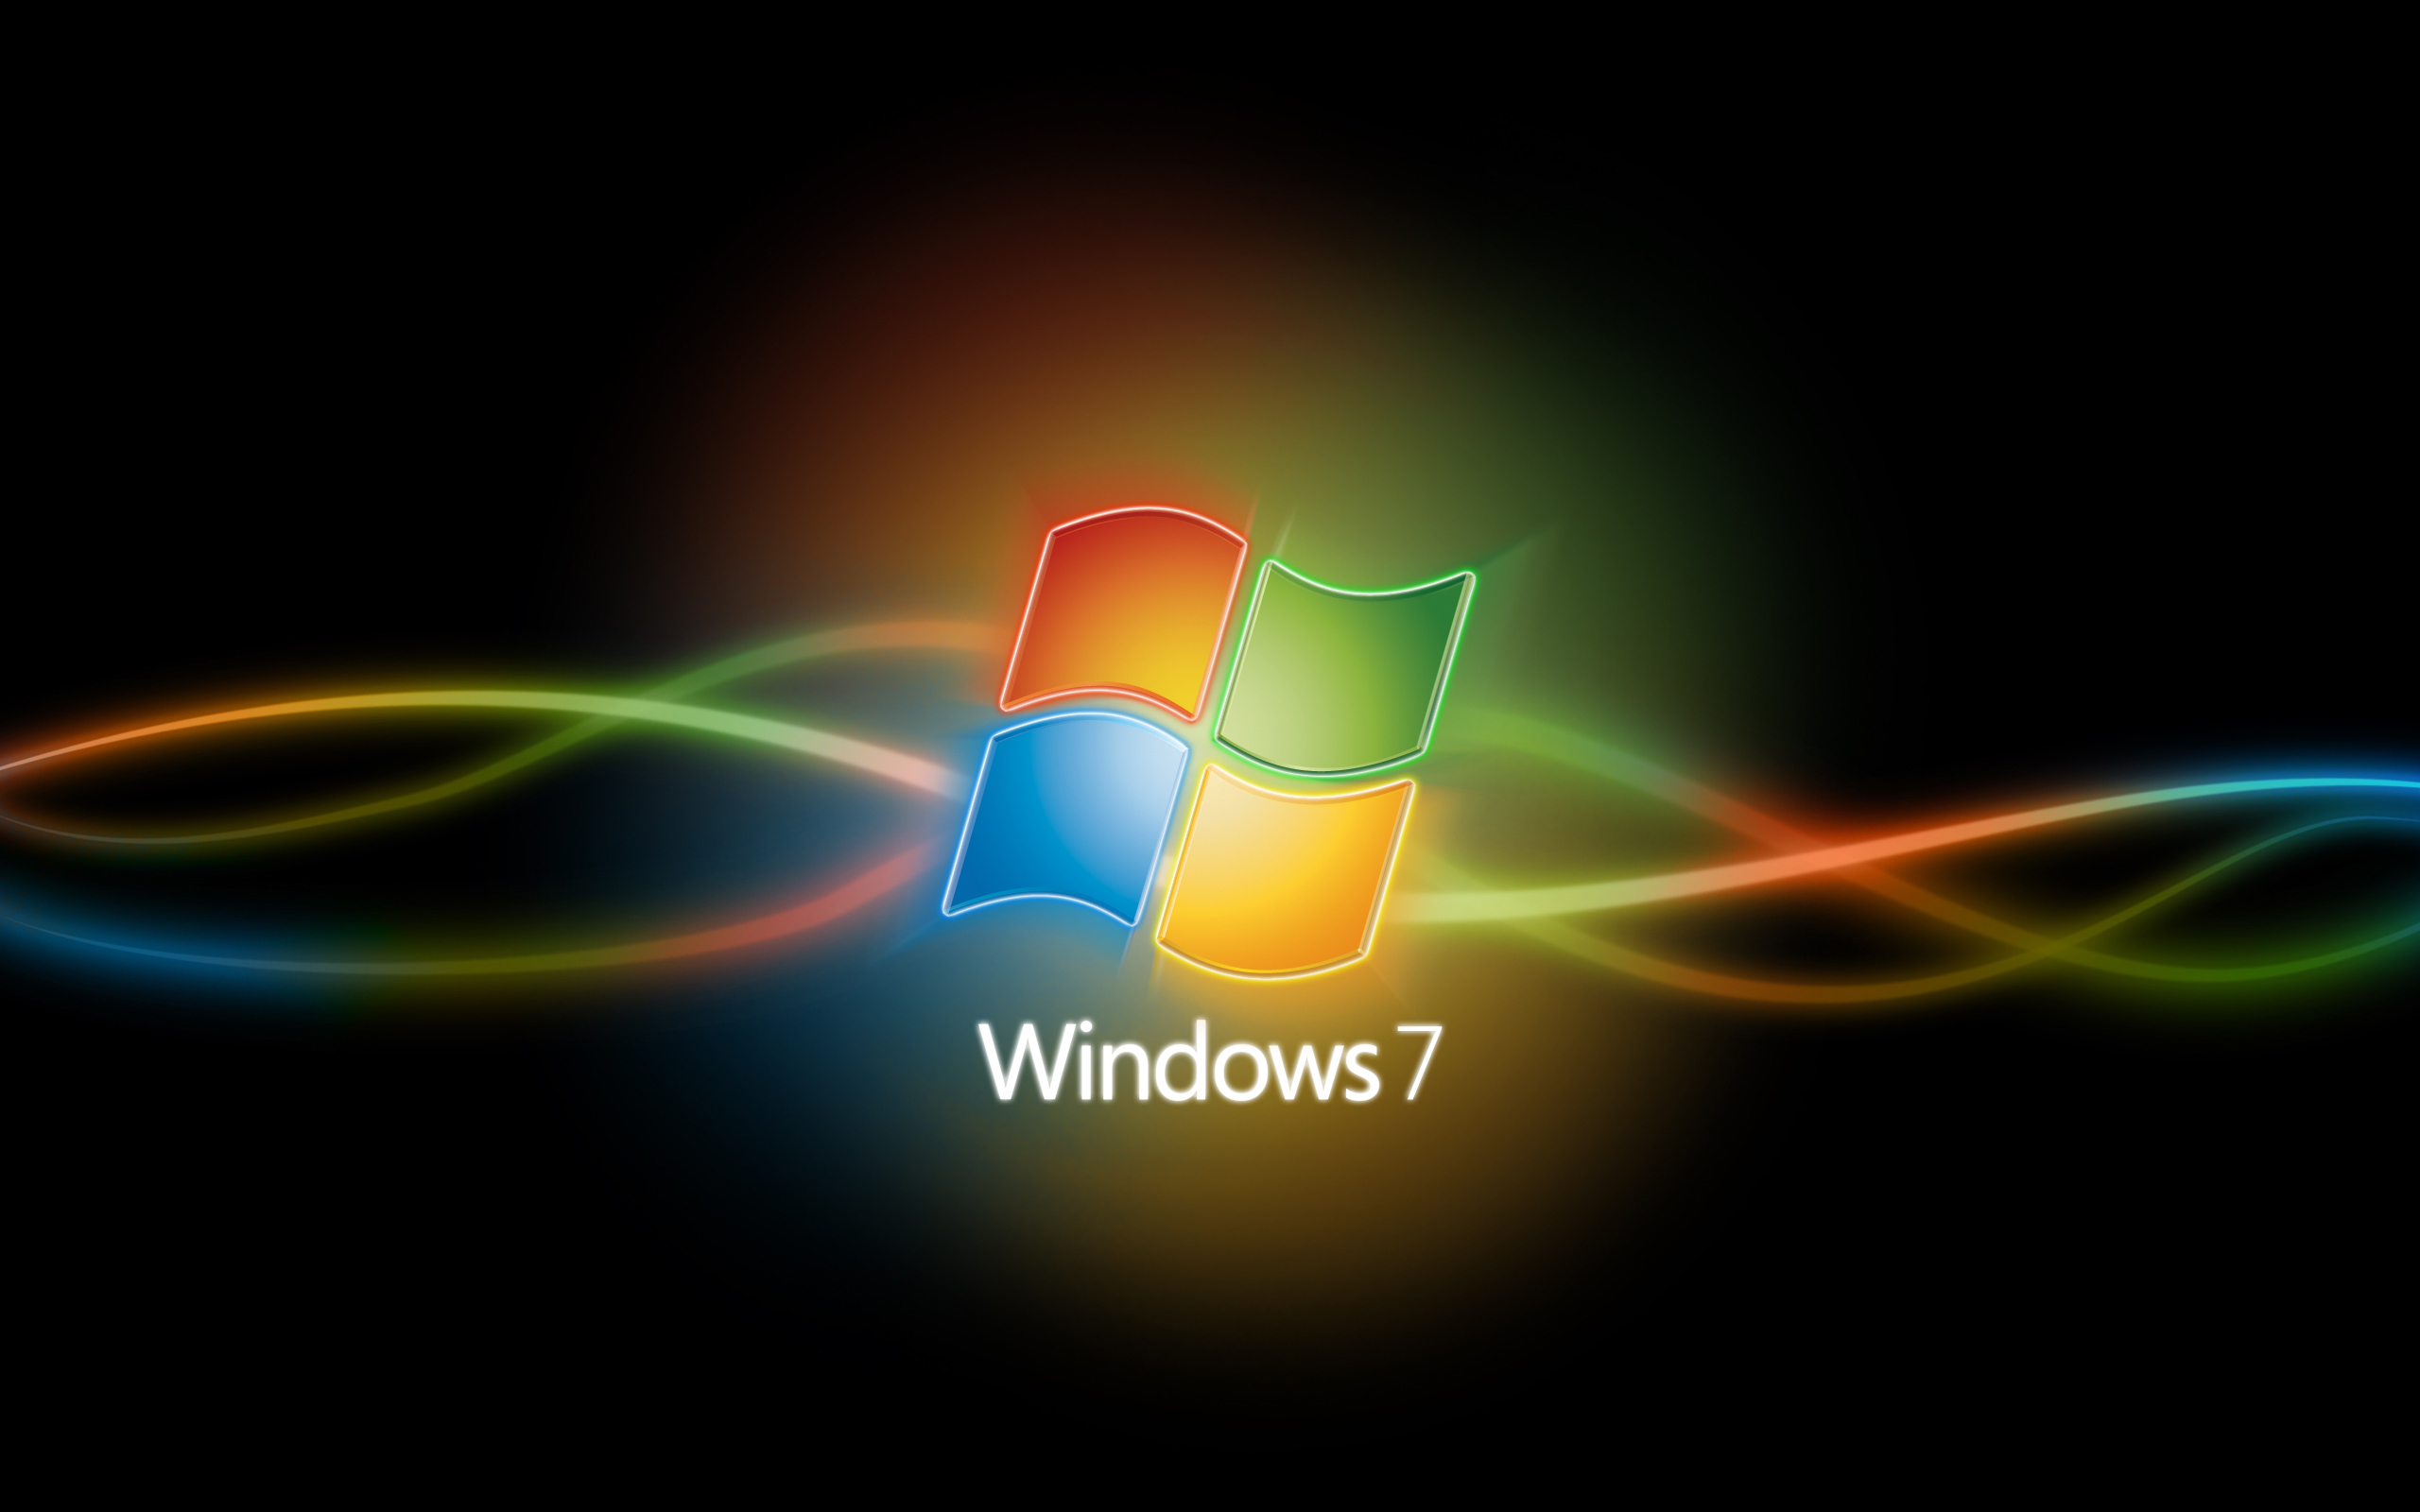 Bạn đang muốn tìm kiếm một tấm hình nền desktop đẹp cho hệ điều hành Windows 7? Chúng tôi có những gợi ý hay cho bạn. Những hình nền tuyệt đẹp giúp cho màn hình desktop của bạn trở nên độc đáo và hấp dẫn hơn. 